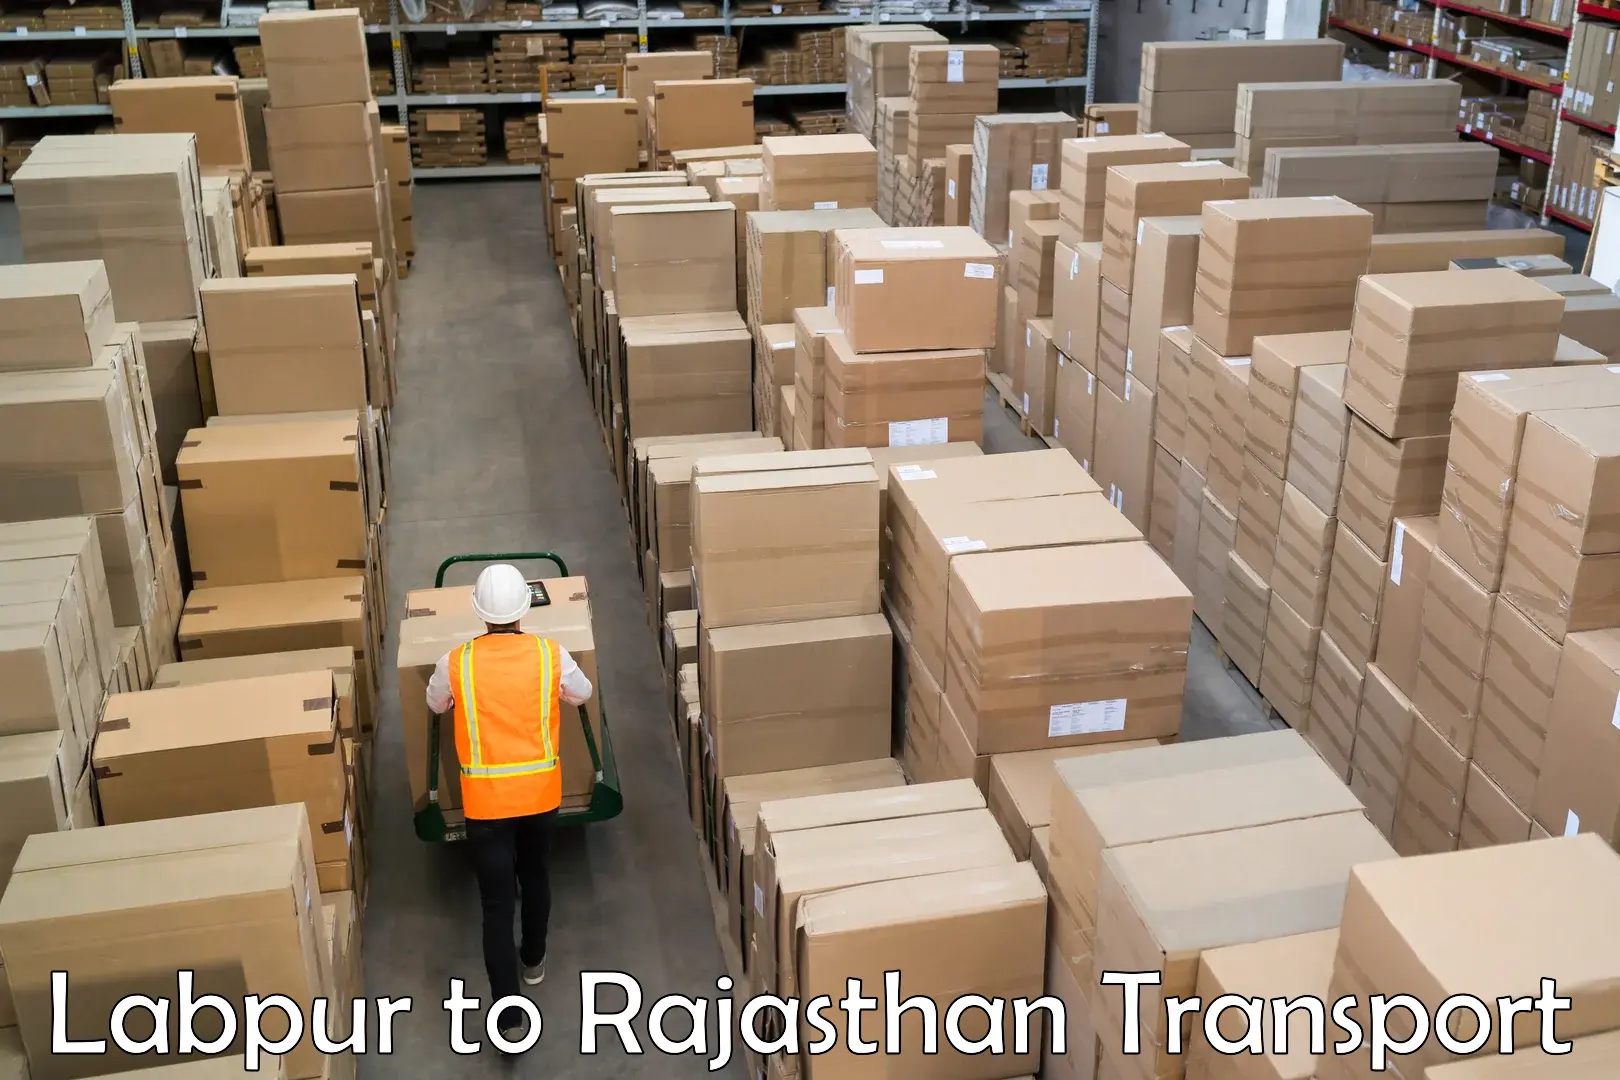 Furniture transport service Labpur to Pratapgarh Rajasthan